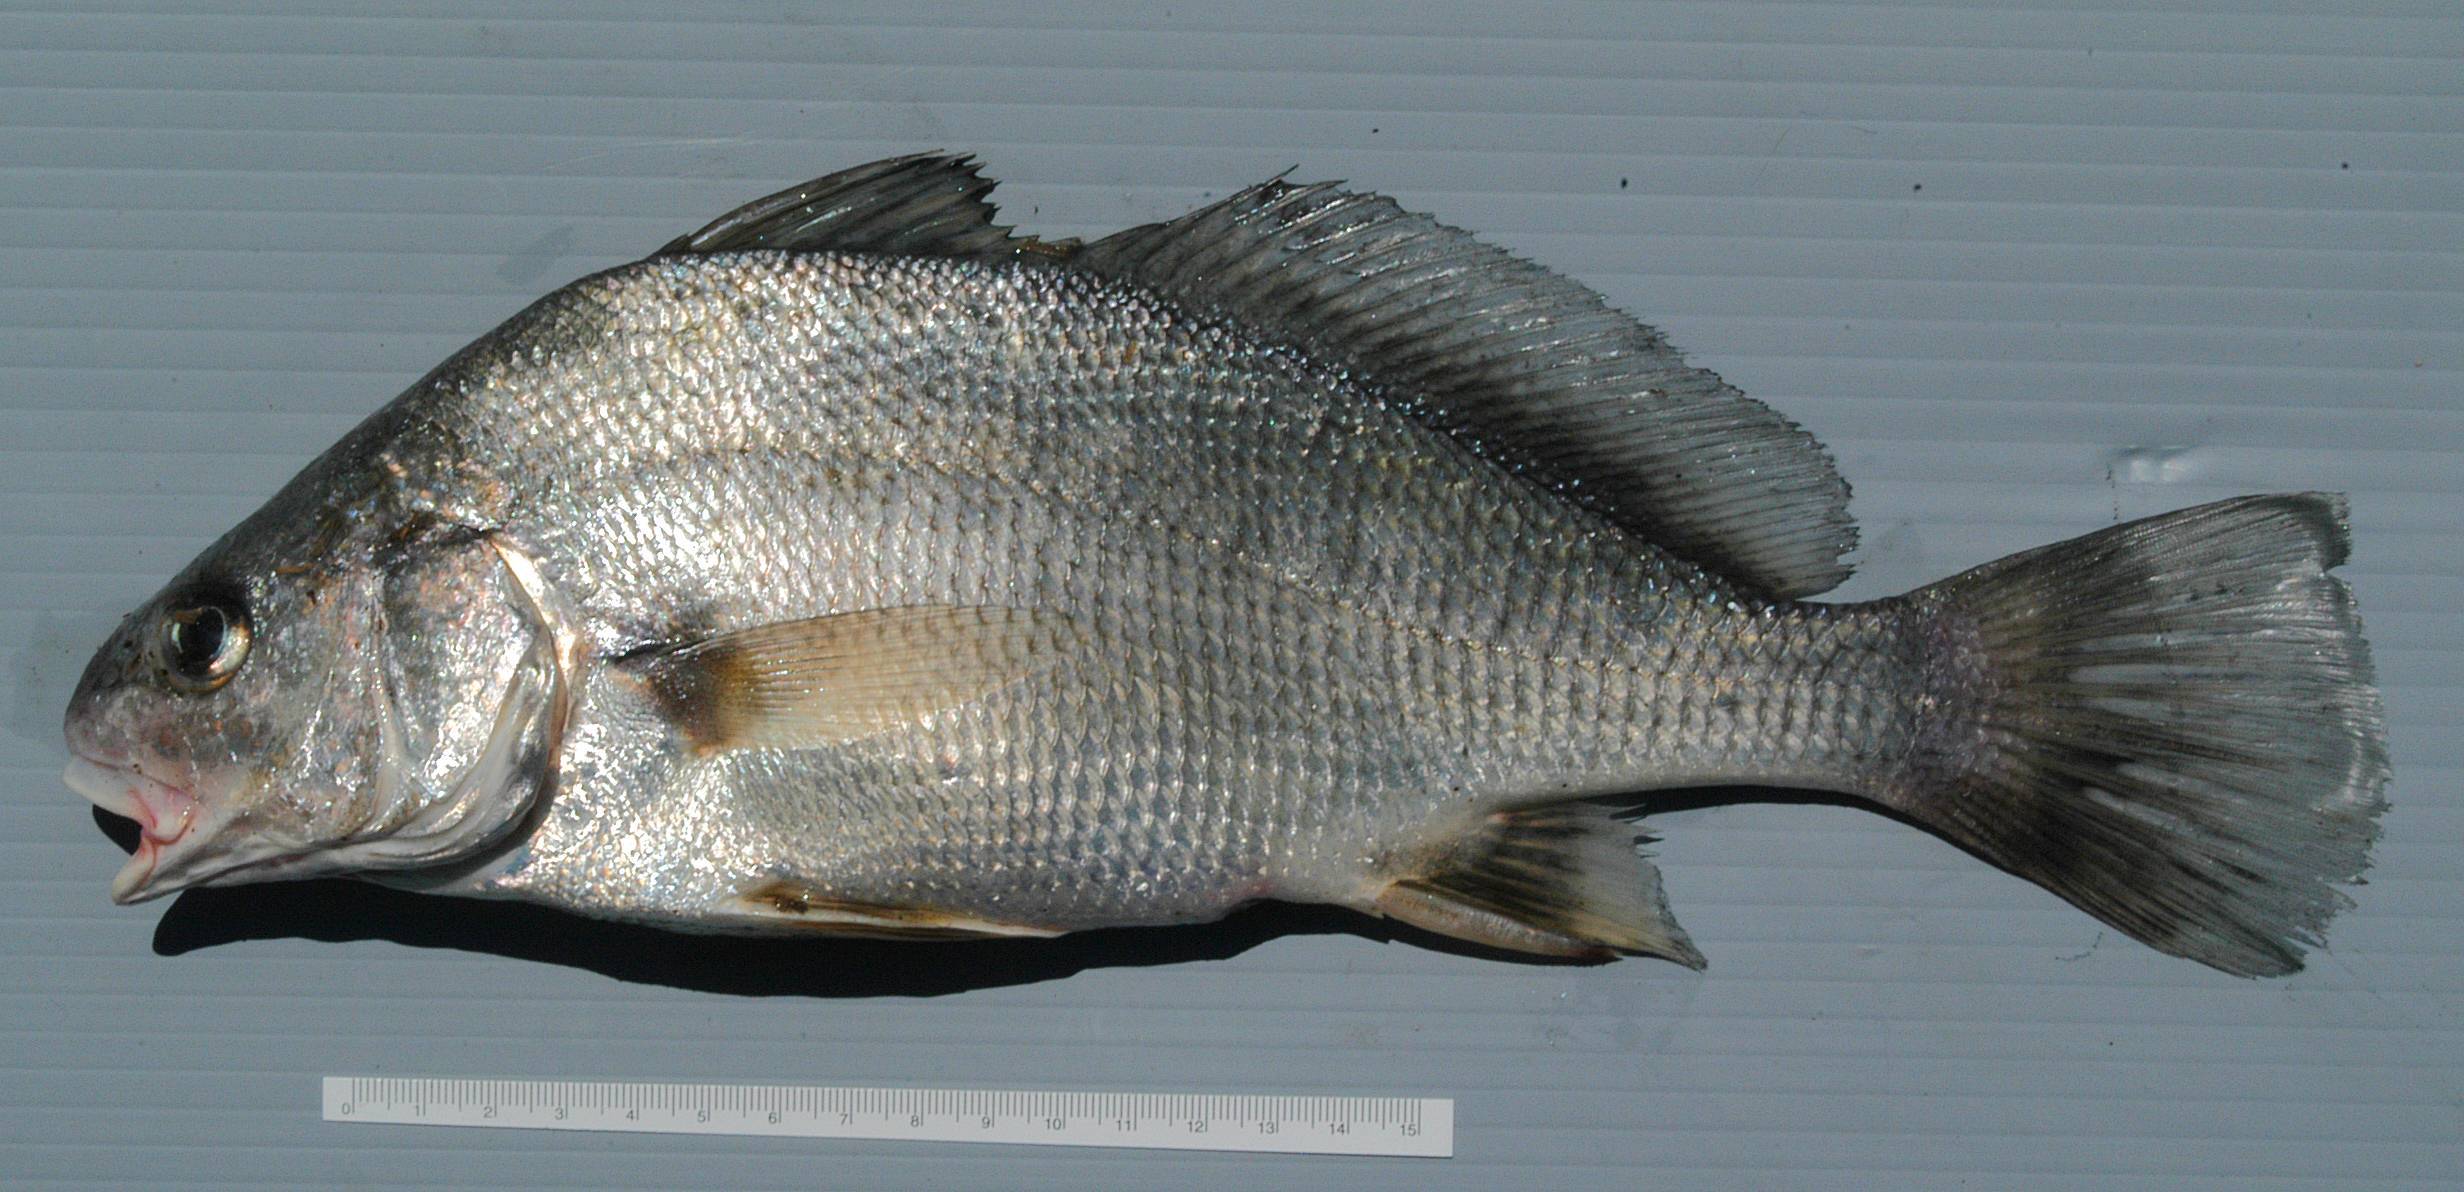 Нерка фото и описание – каталог рыб, смотреть онлайн